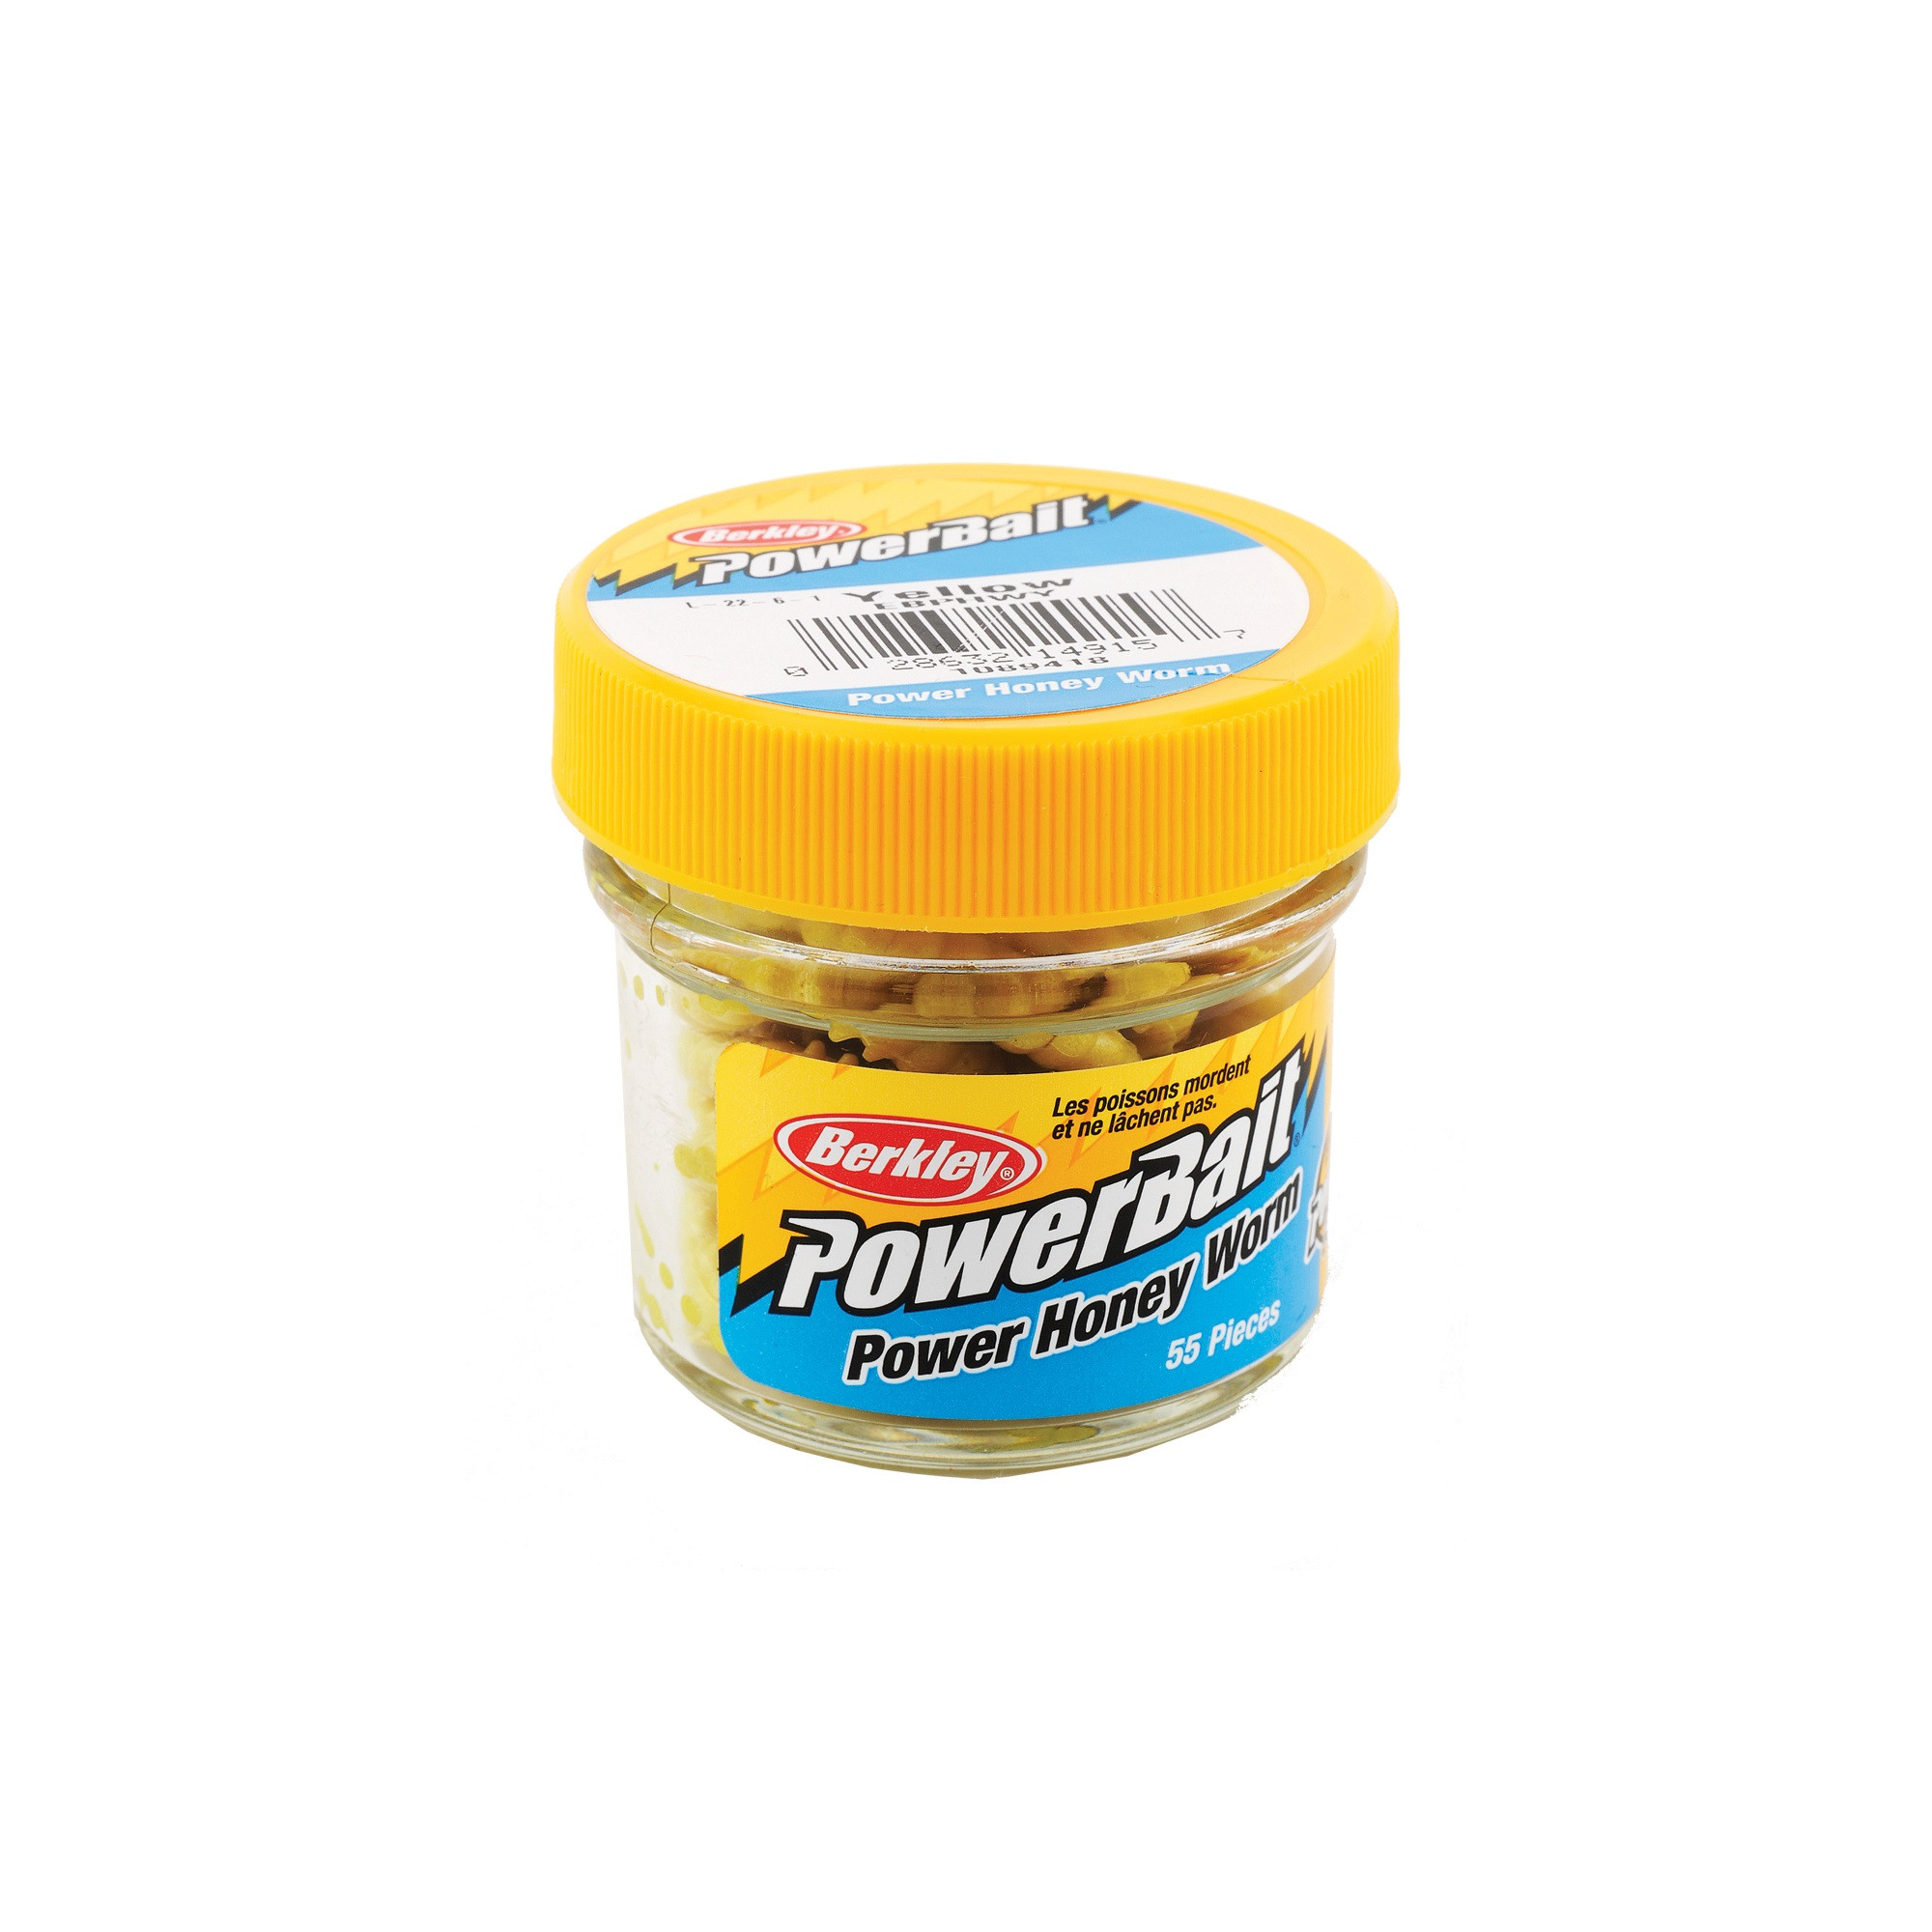 Berkley Powerbait Power Honey Worms Yellow